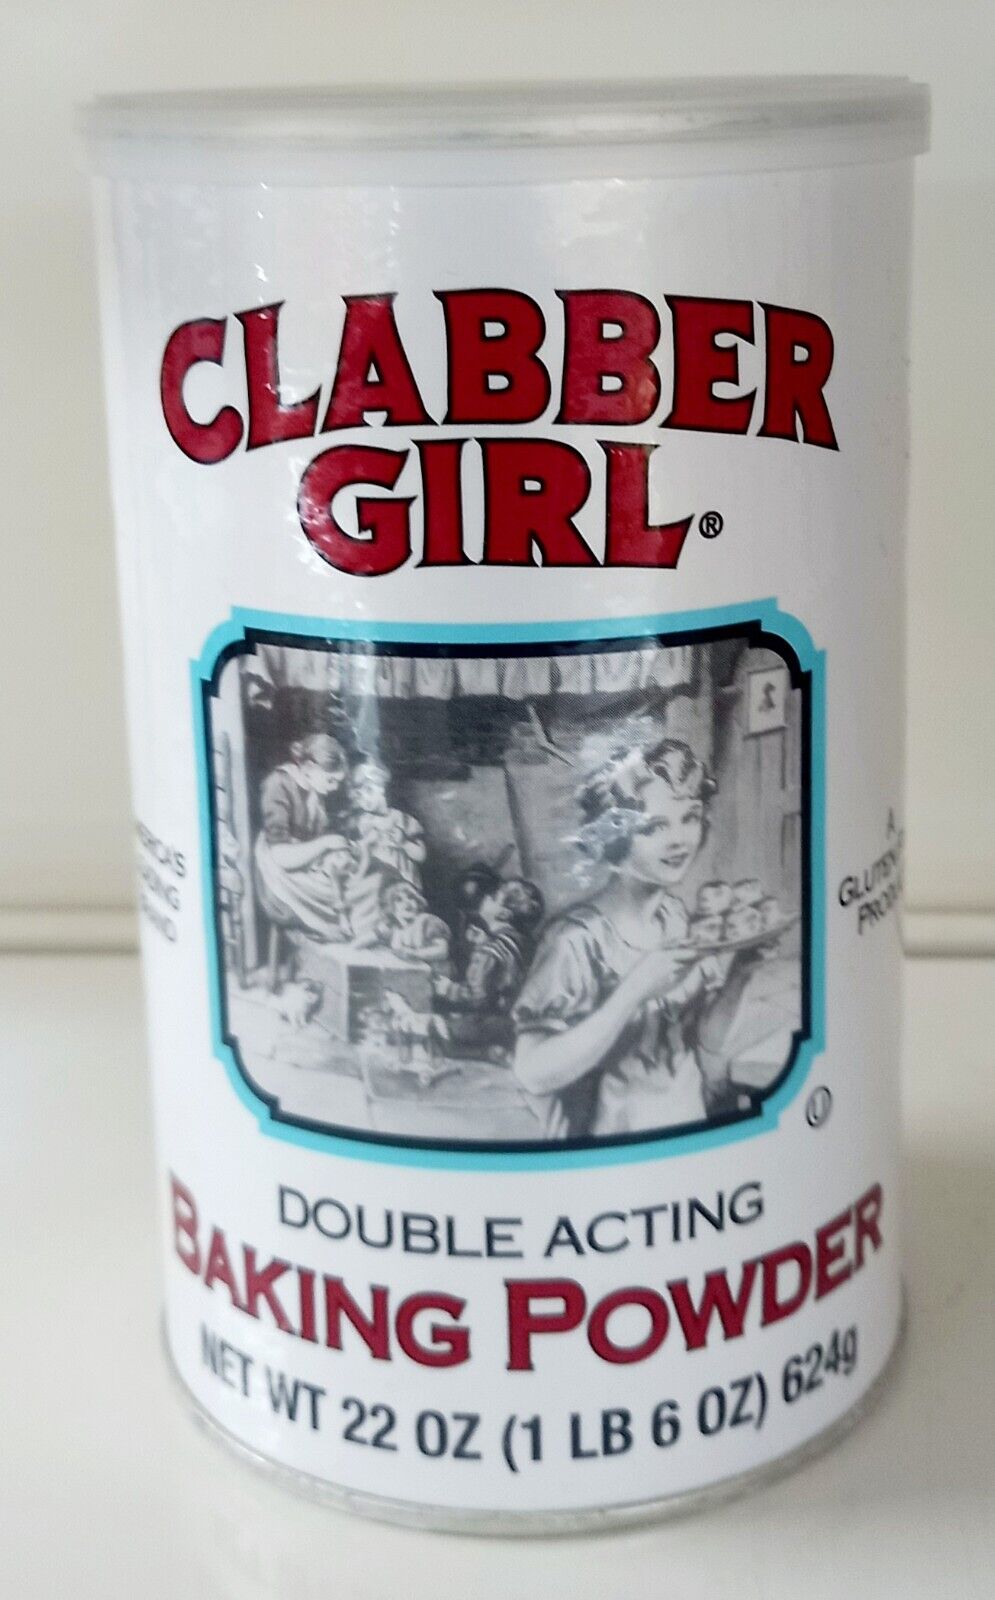 Clabber Girl  Double Acting Baking Powder, 22oz (1 lb 6 oz) 